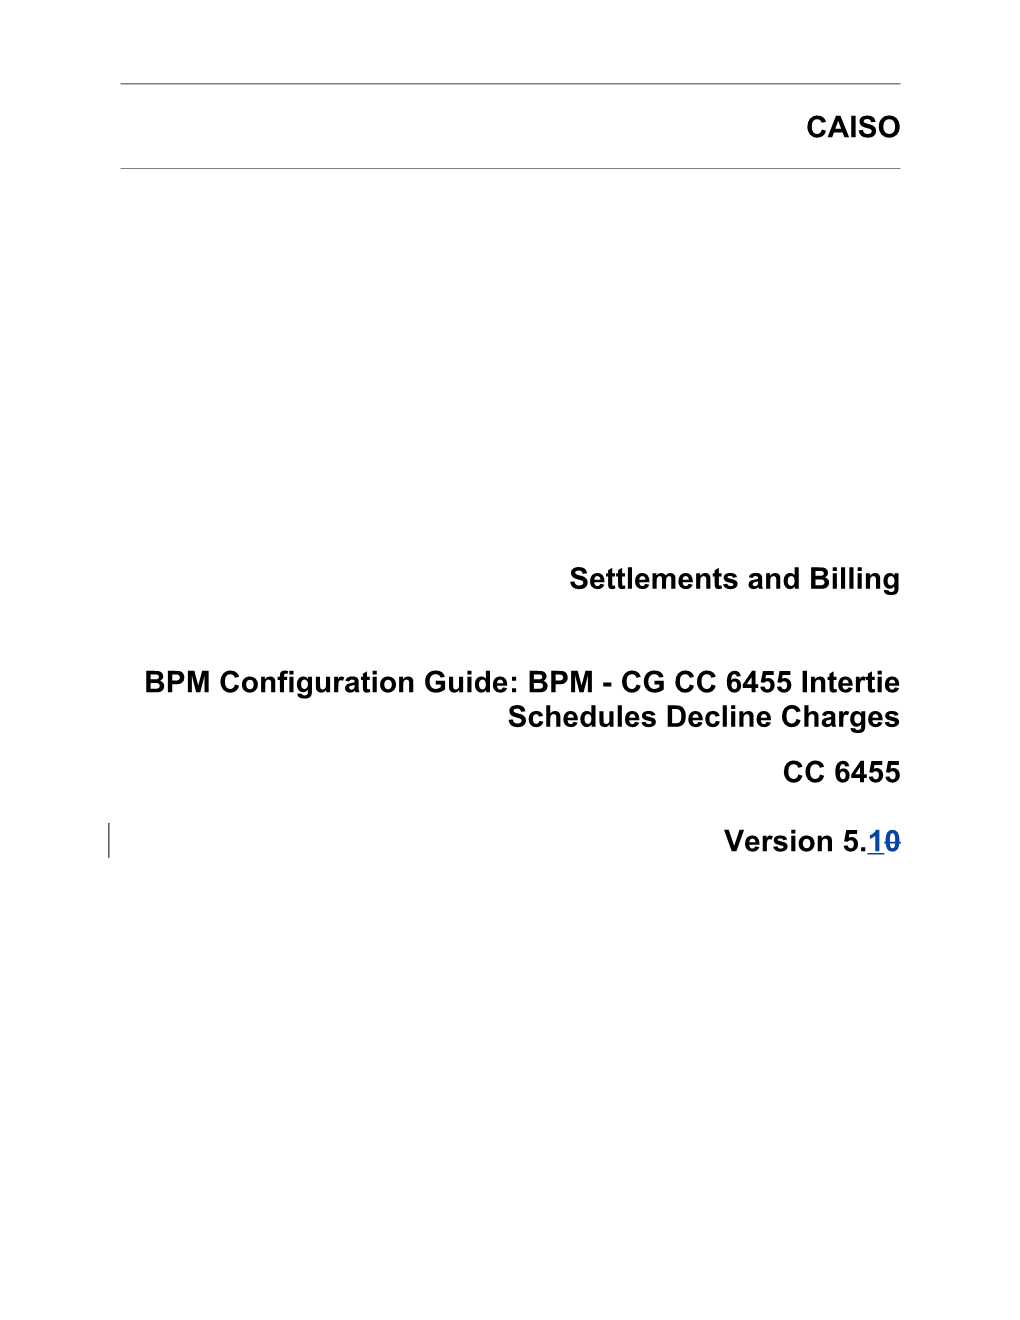 BPM - CG CC 6455 Intertie Schedules Decline Charges